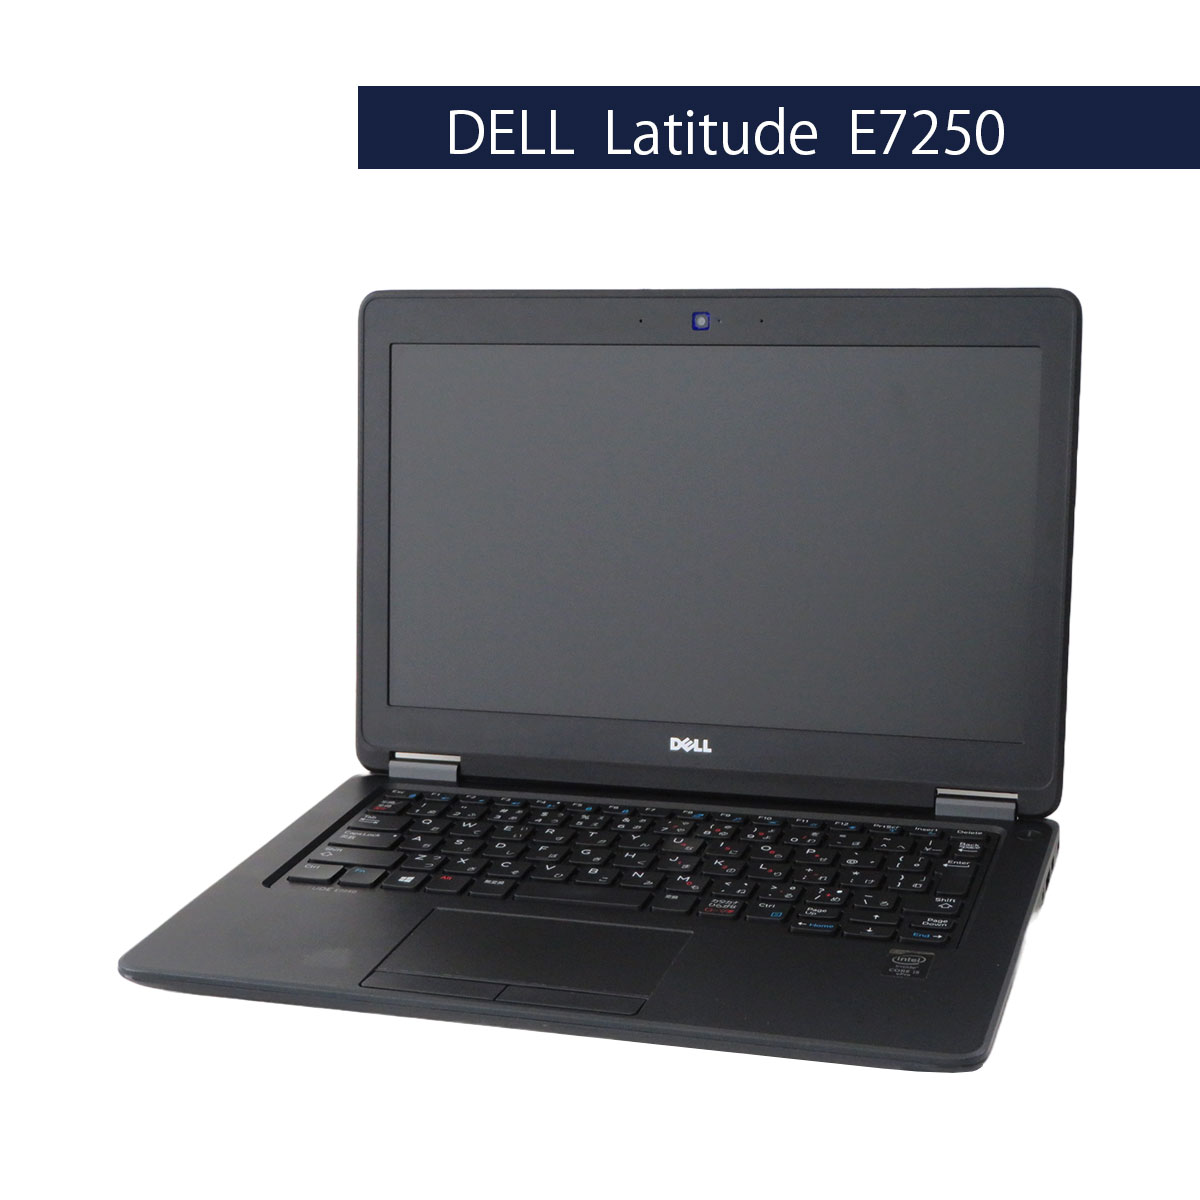 DELL Latitude E7250 Core i5 5300U Windows10 Pro 64Bit